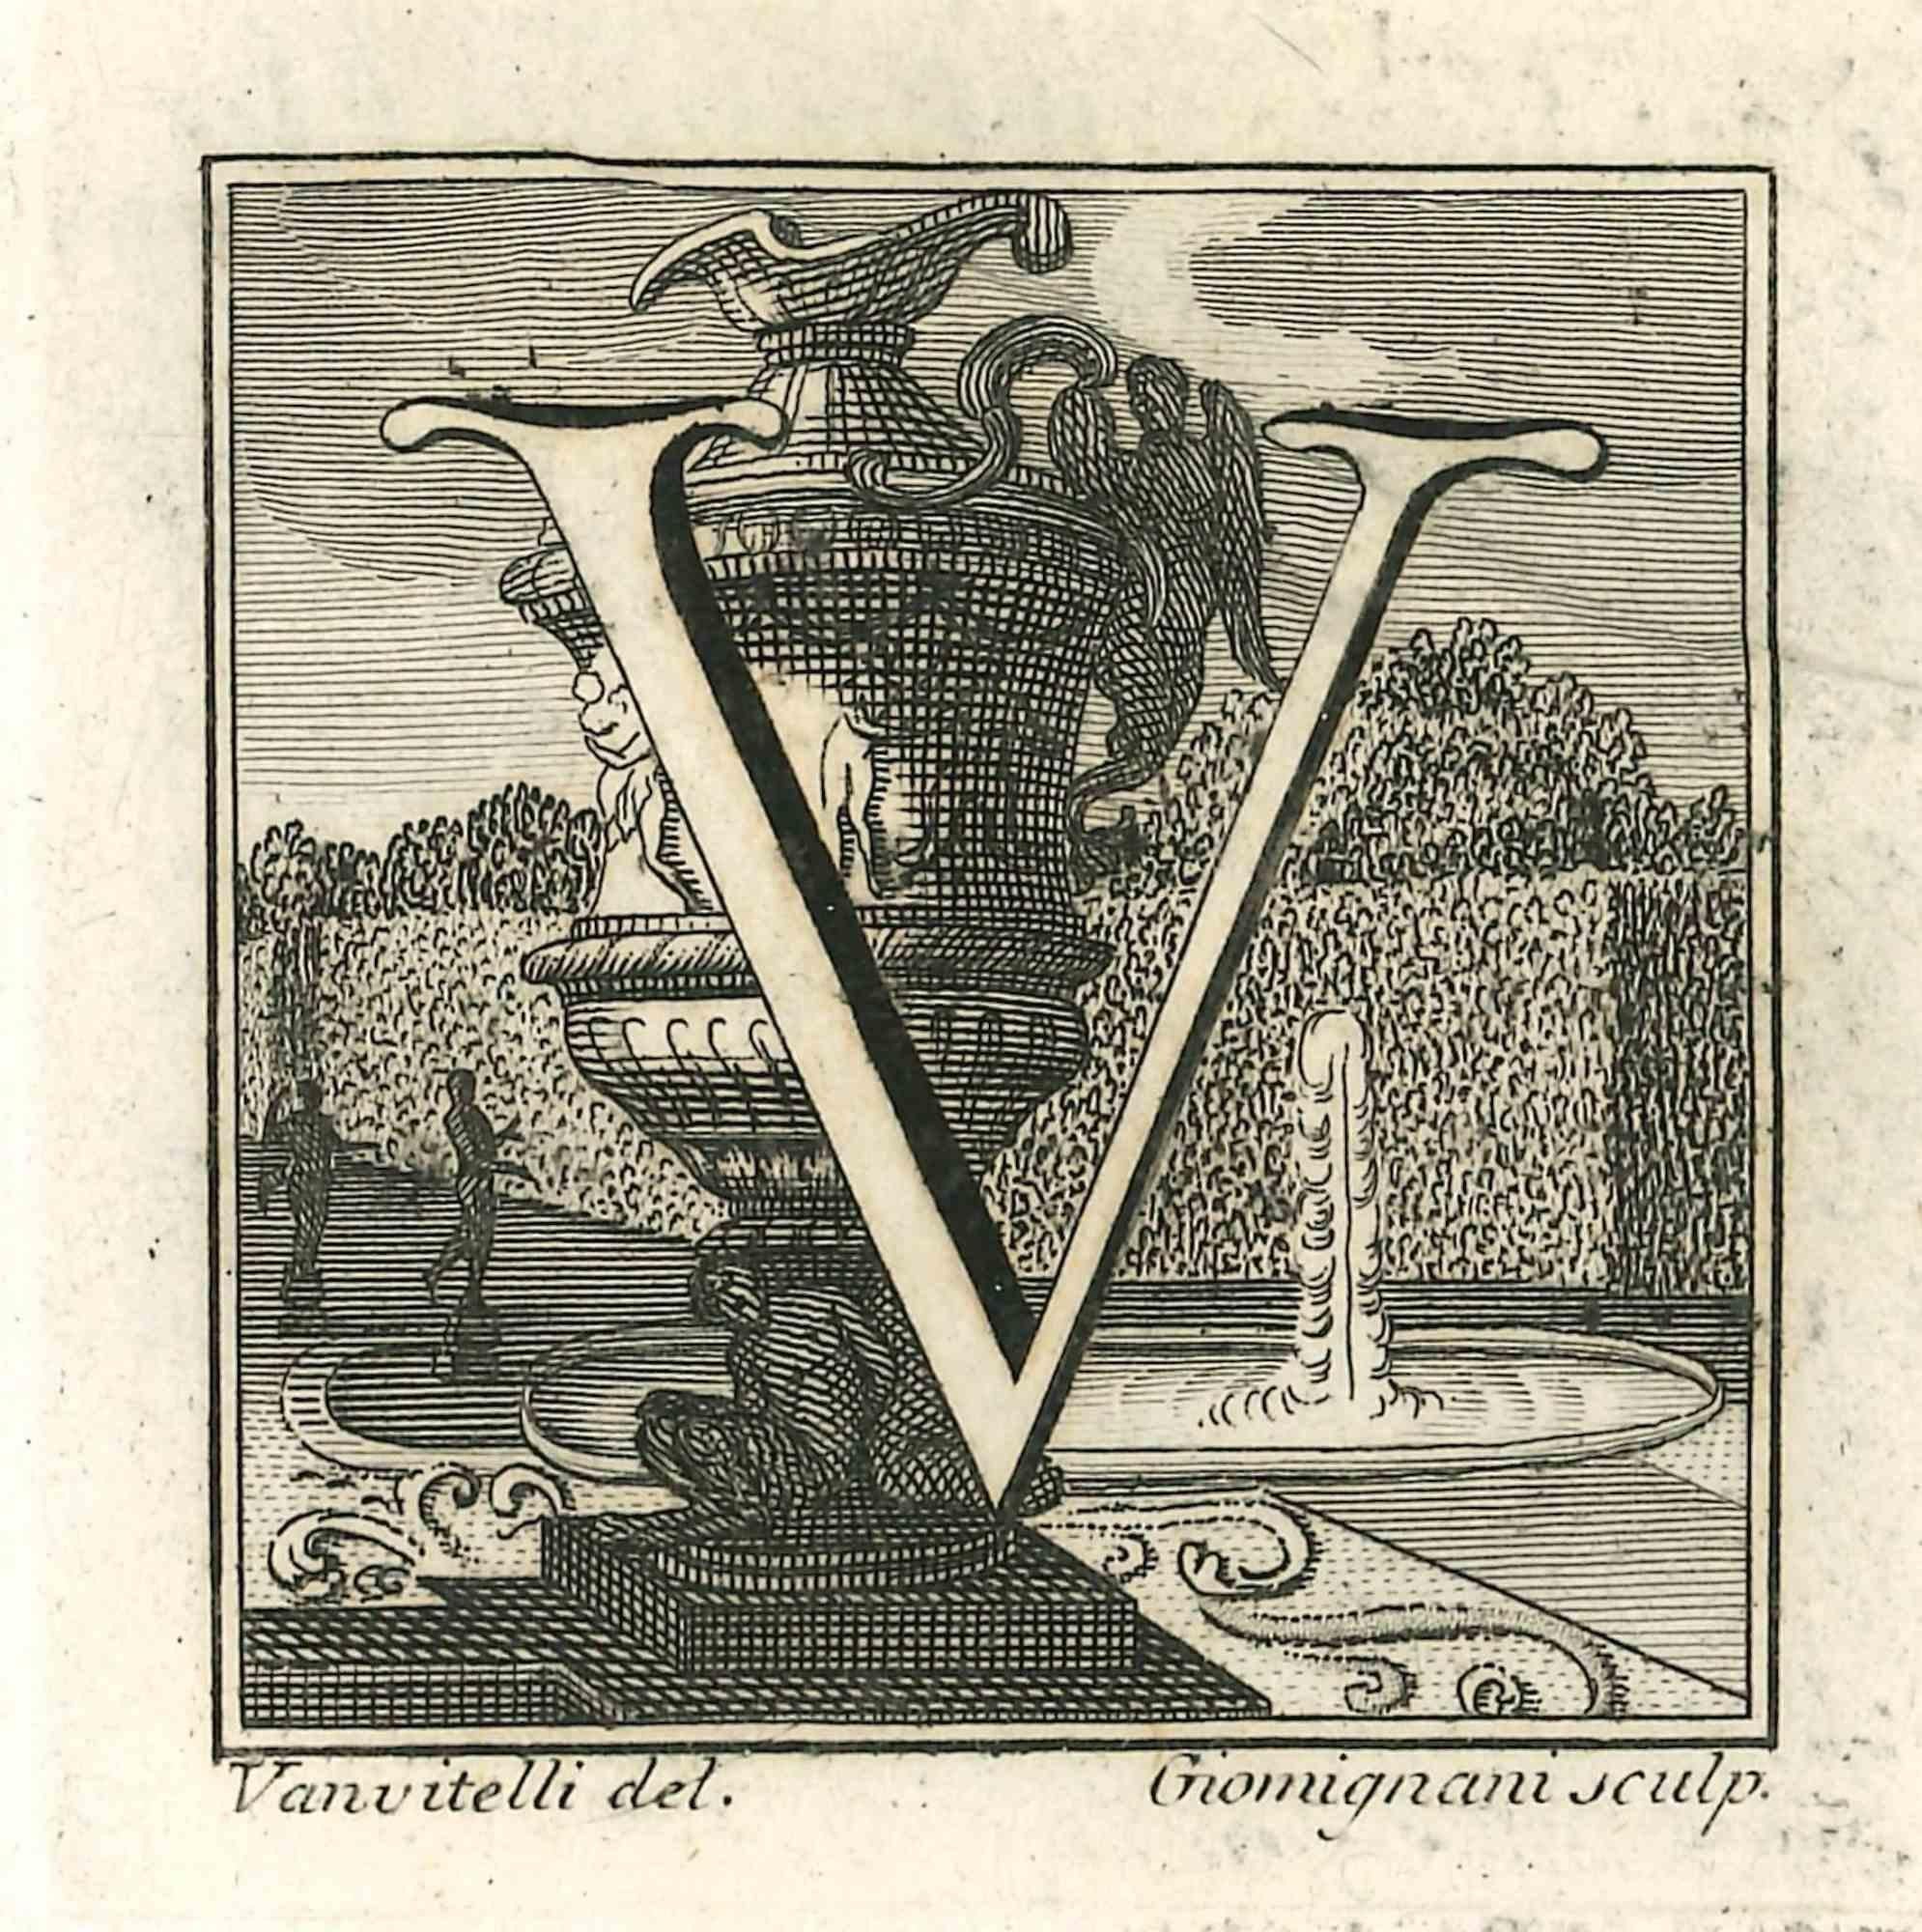 La lettre V est une gravure réalisée par Luigi Vanvitelli au XVIIIe siècle.

La gravure appartient à la suite d'estampes "Antiquités d'Herculanum exposées" (titre original : "Le Antichità di Ercolano Esposte"), un volume de huit gravures des